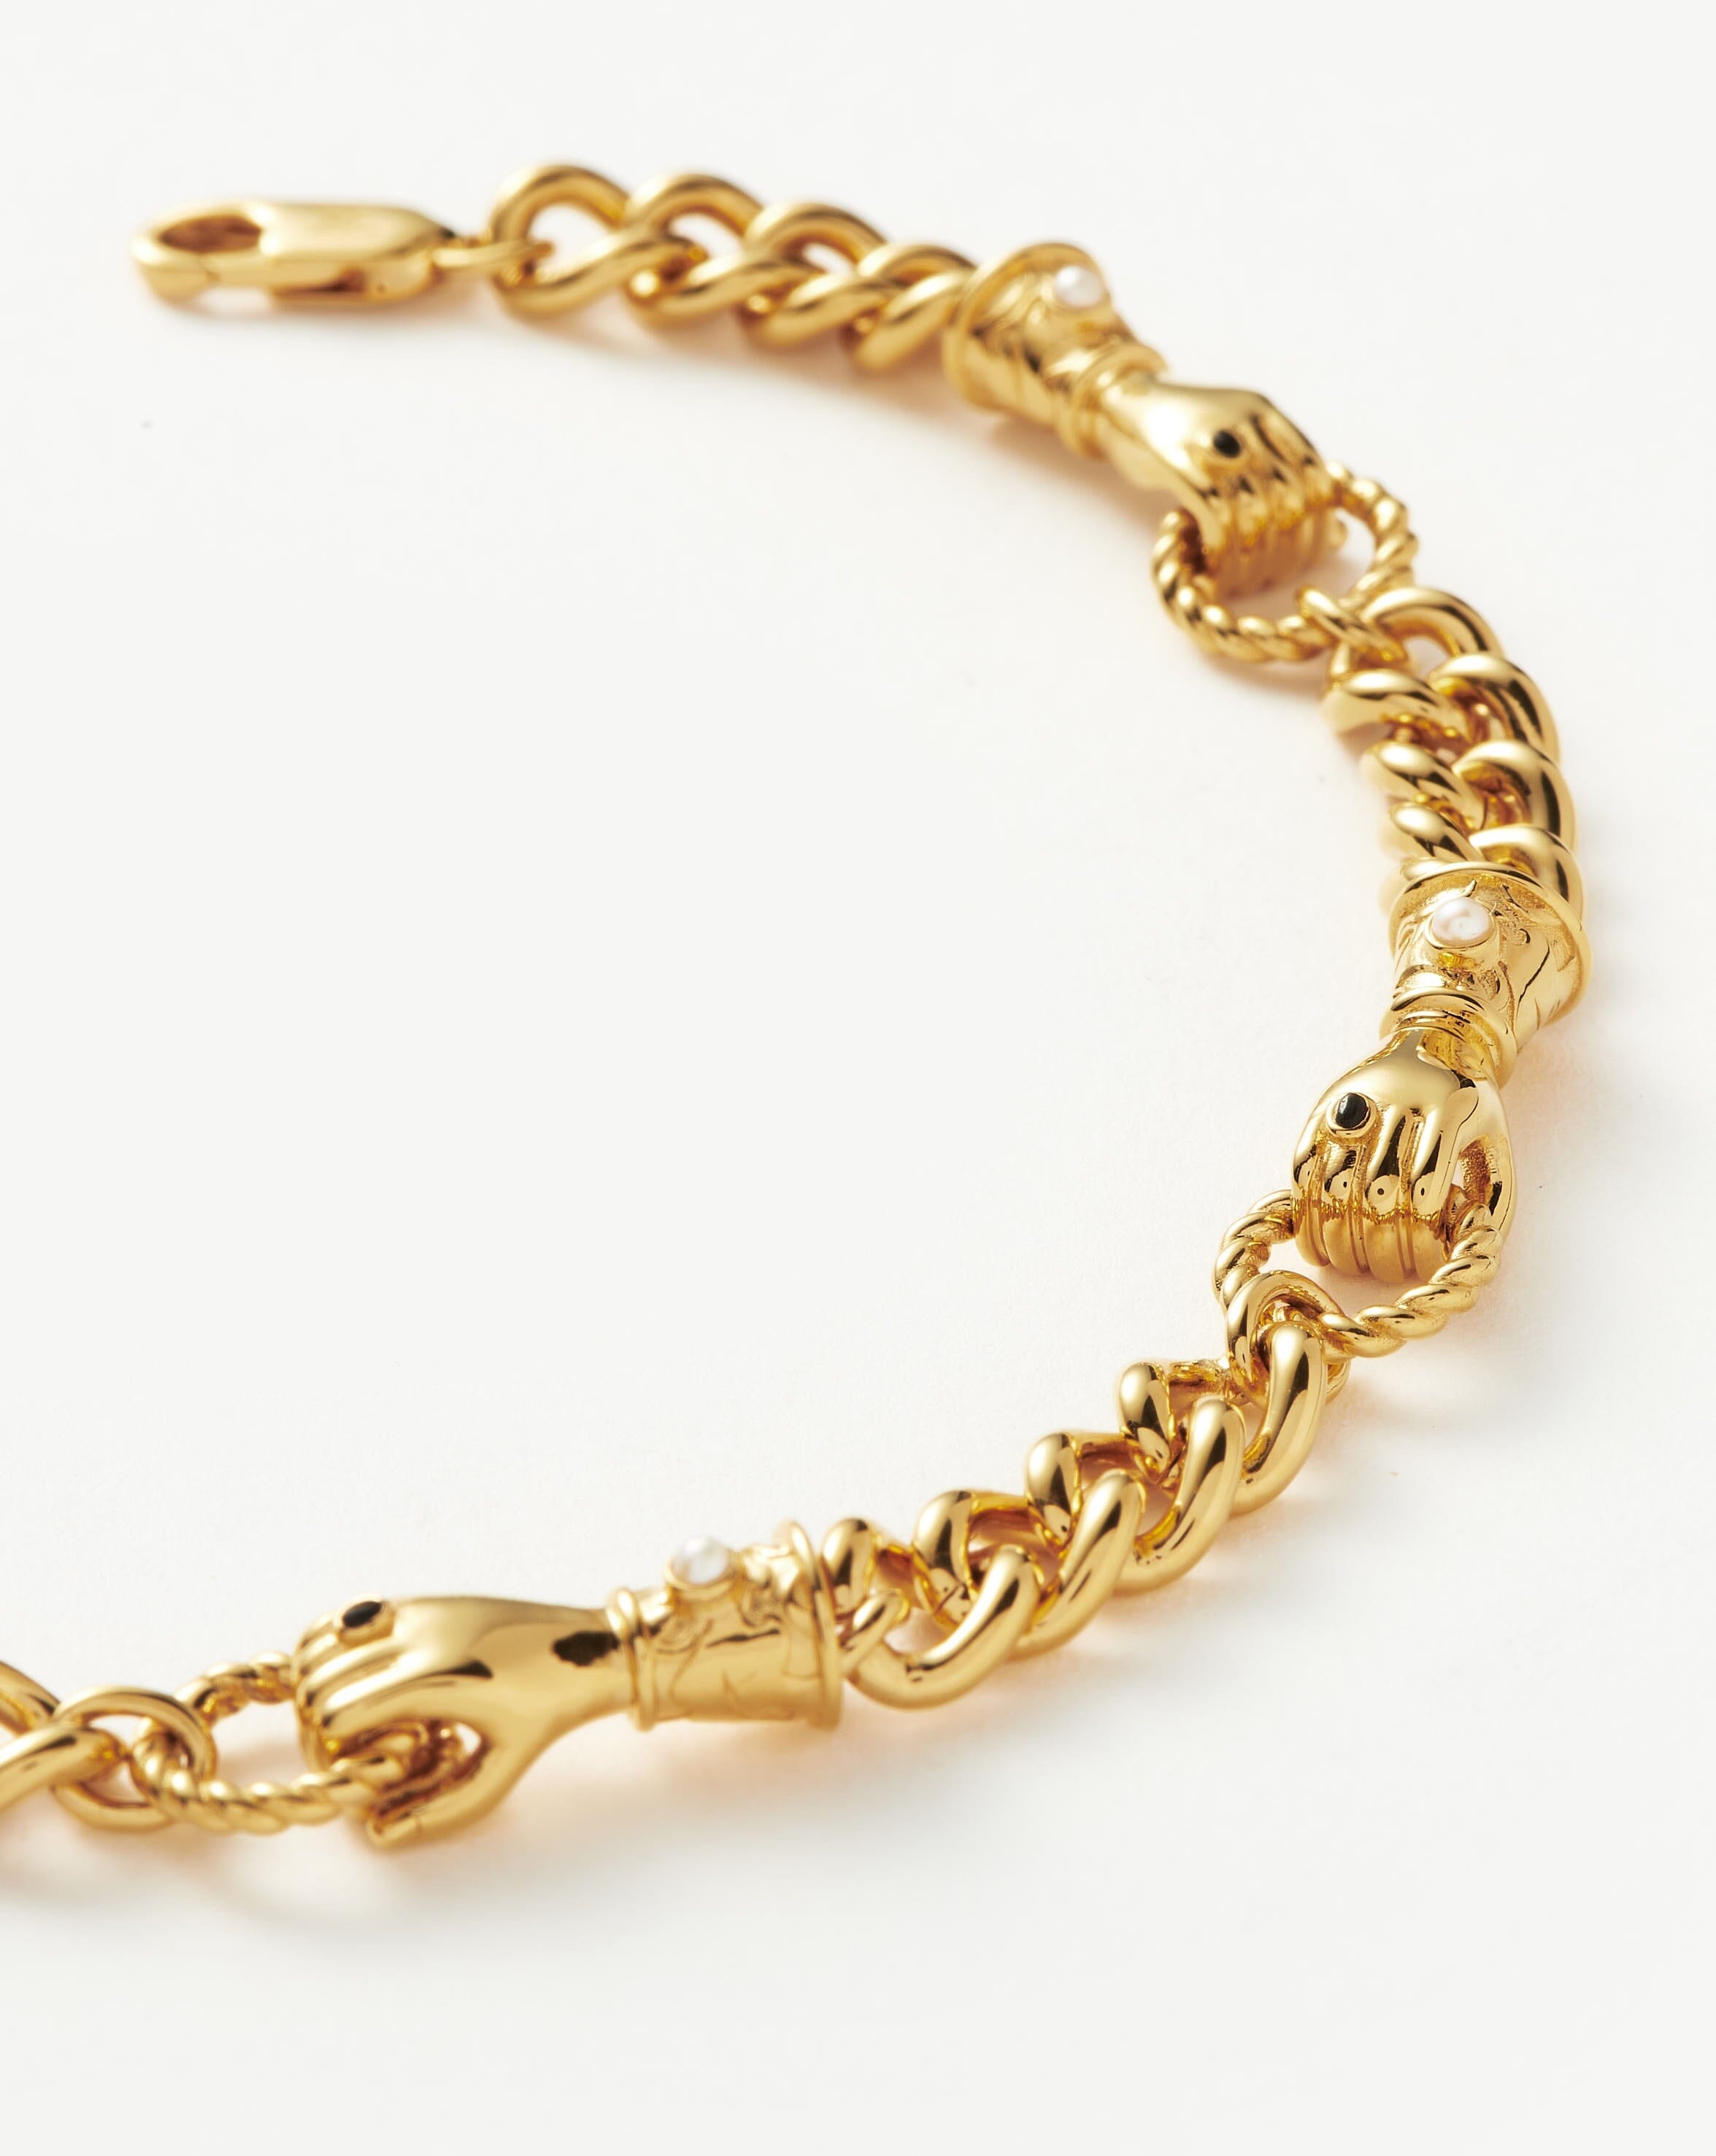 22 Gram Solid 18k White Gold Bracelet Men's 5.5mm Anchor Link Chain